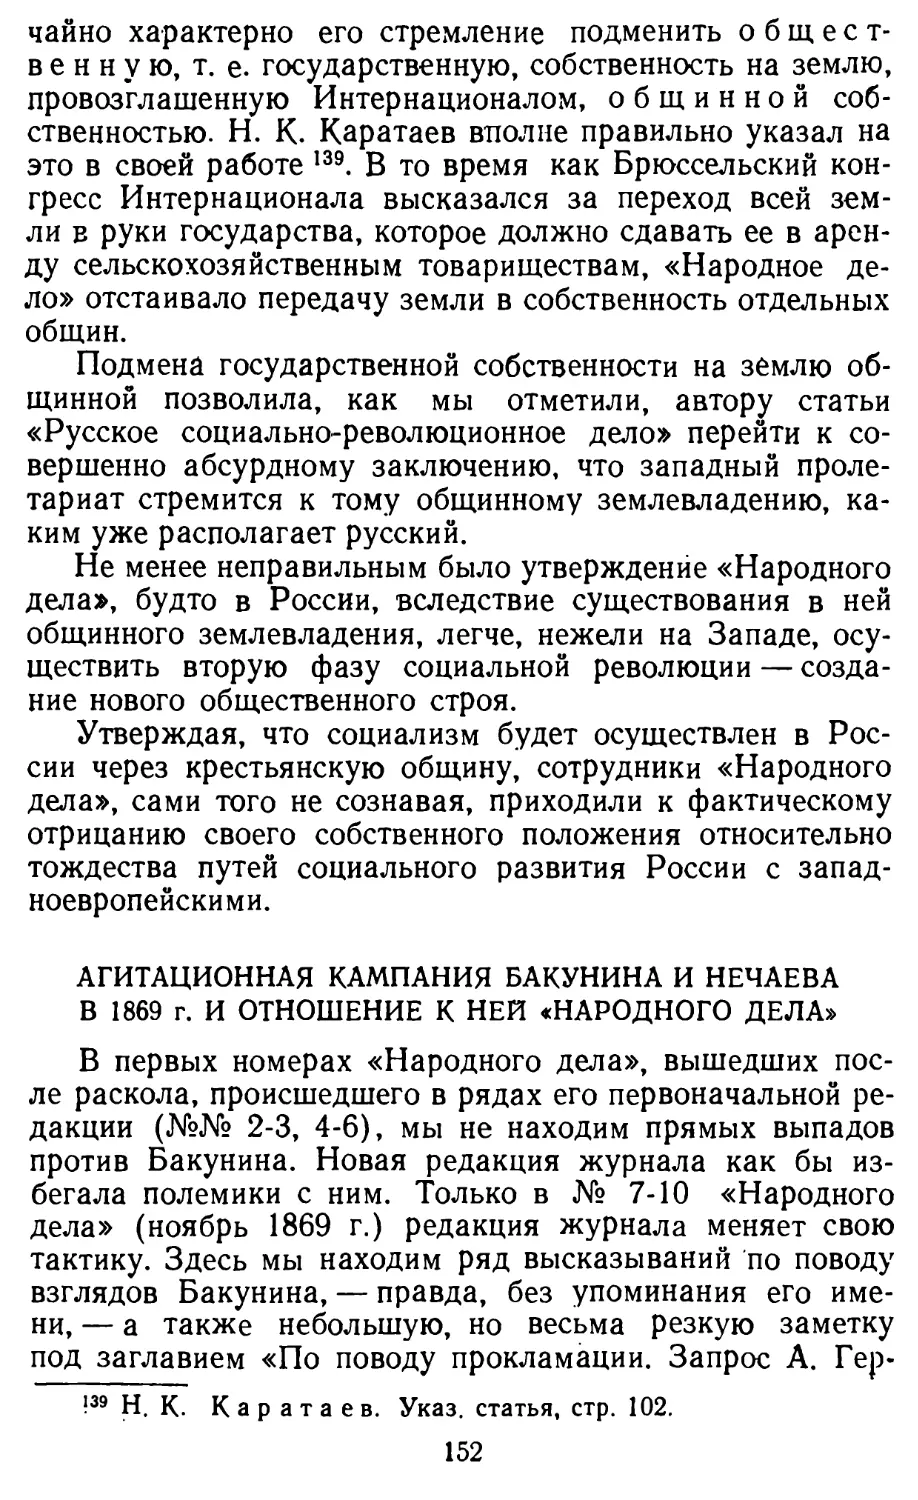 Агитационная кампания Бакунина и Нечаева в 1869 г. и отношение к ней \